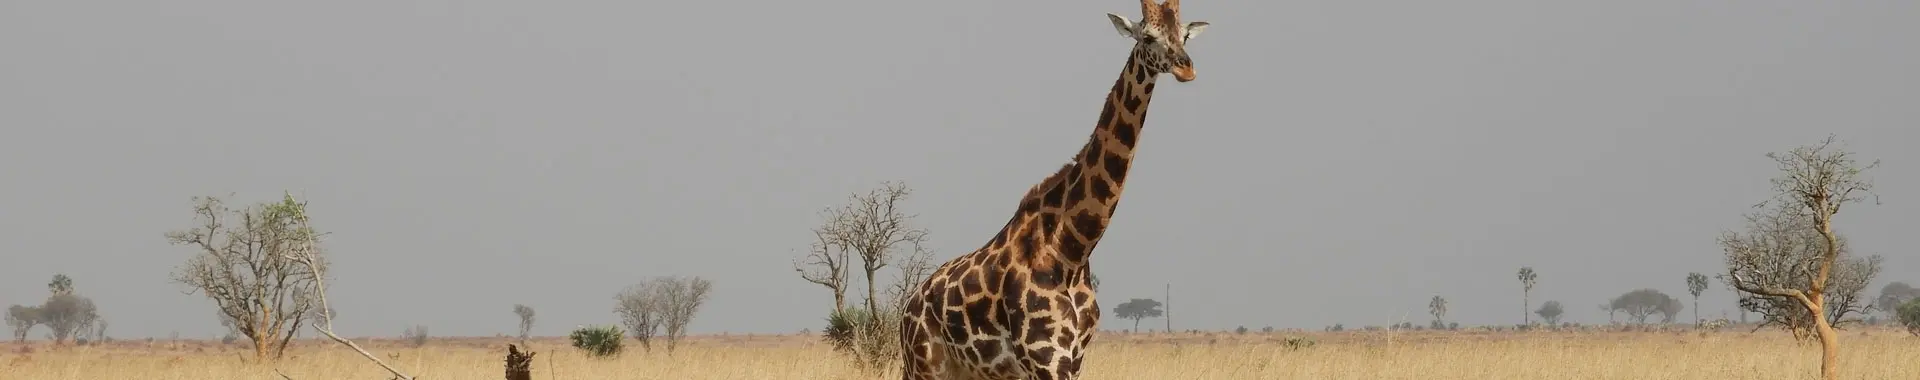 Сафари с жирафами в Танзании